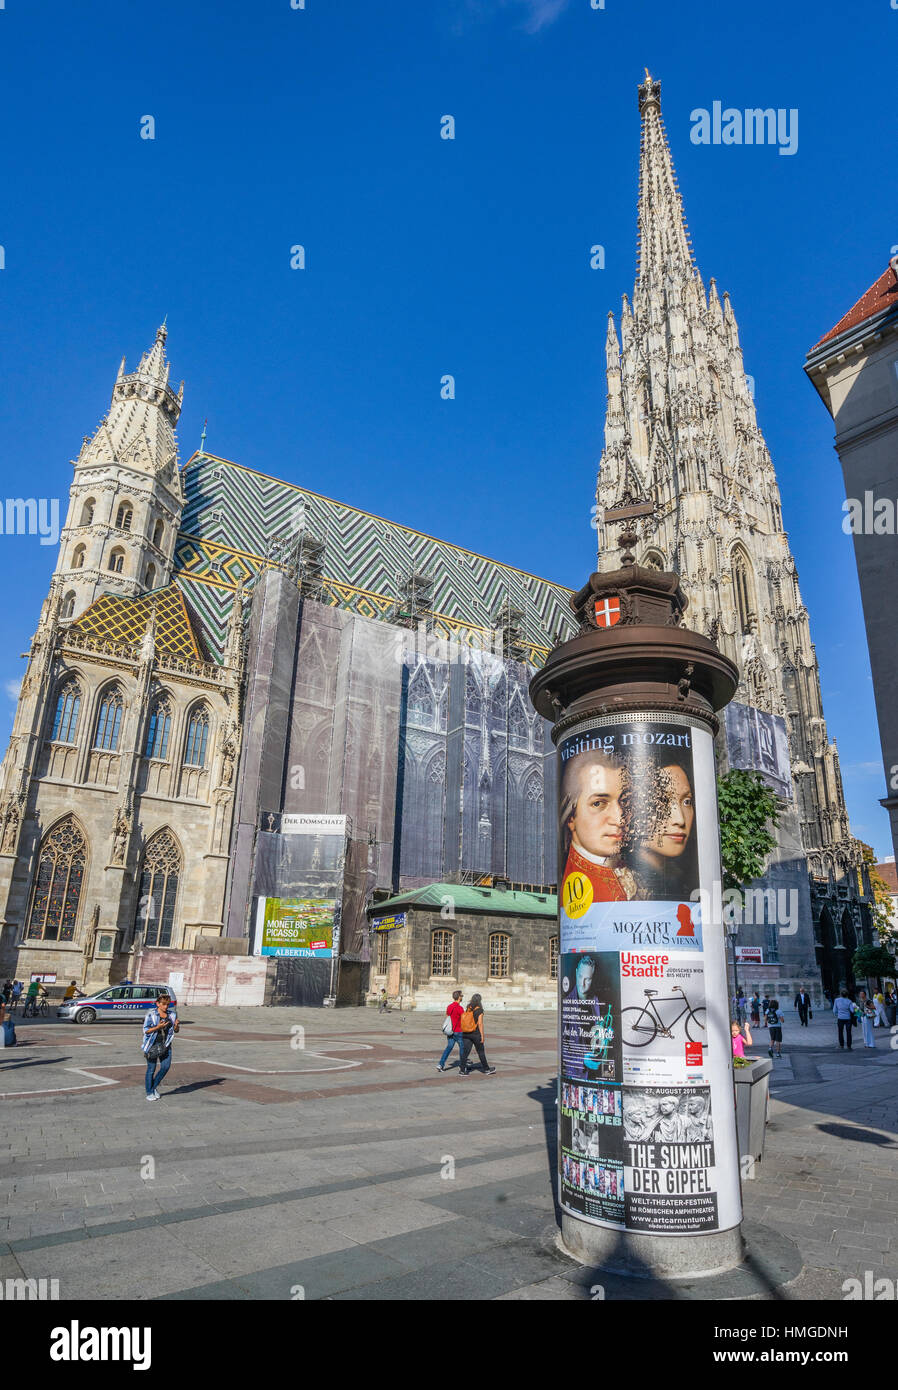 Austria, Viena, Stephansplatz, hábilmente encubierto effords conservación y restauración en la Catedral de San Esteban (Stephansdom) Foto de stock